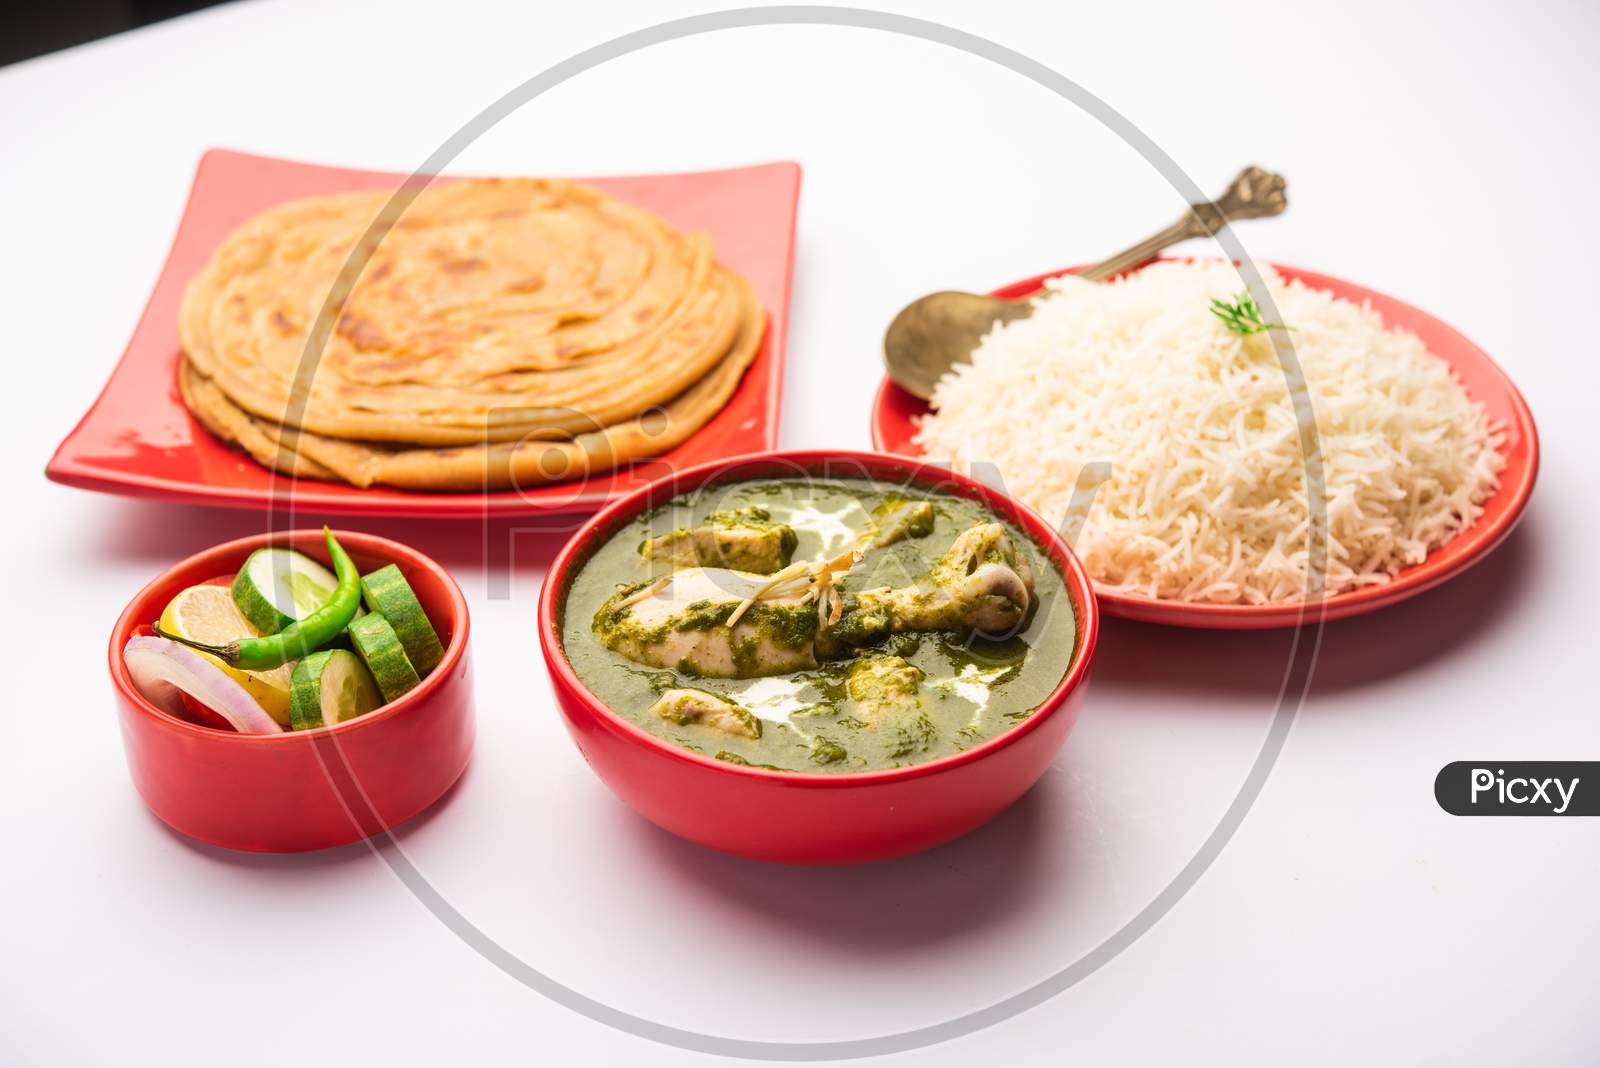 Green Palak Chicken Curry Or Murgh Hariyali Tikka Masala Or Spinach Murg Saagwala Served With Rice And Laccha Paratha